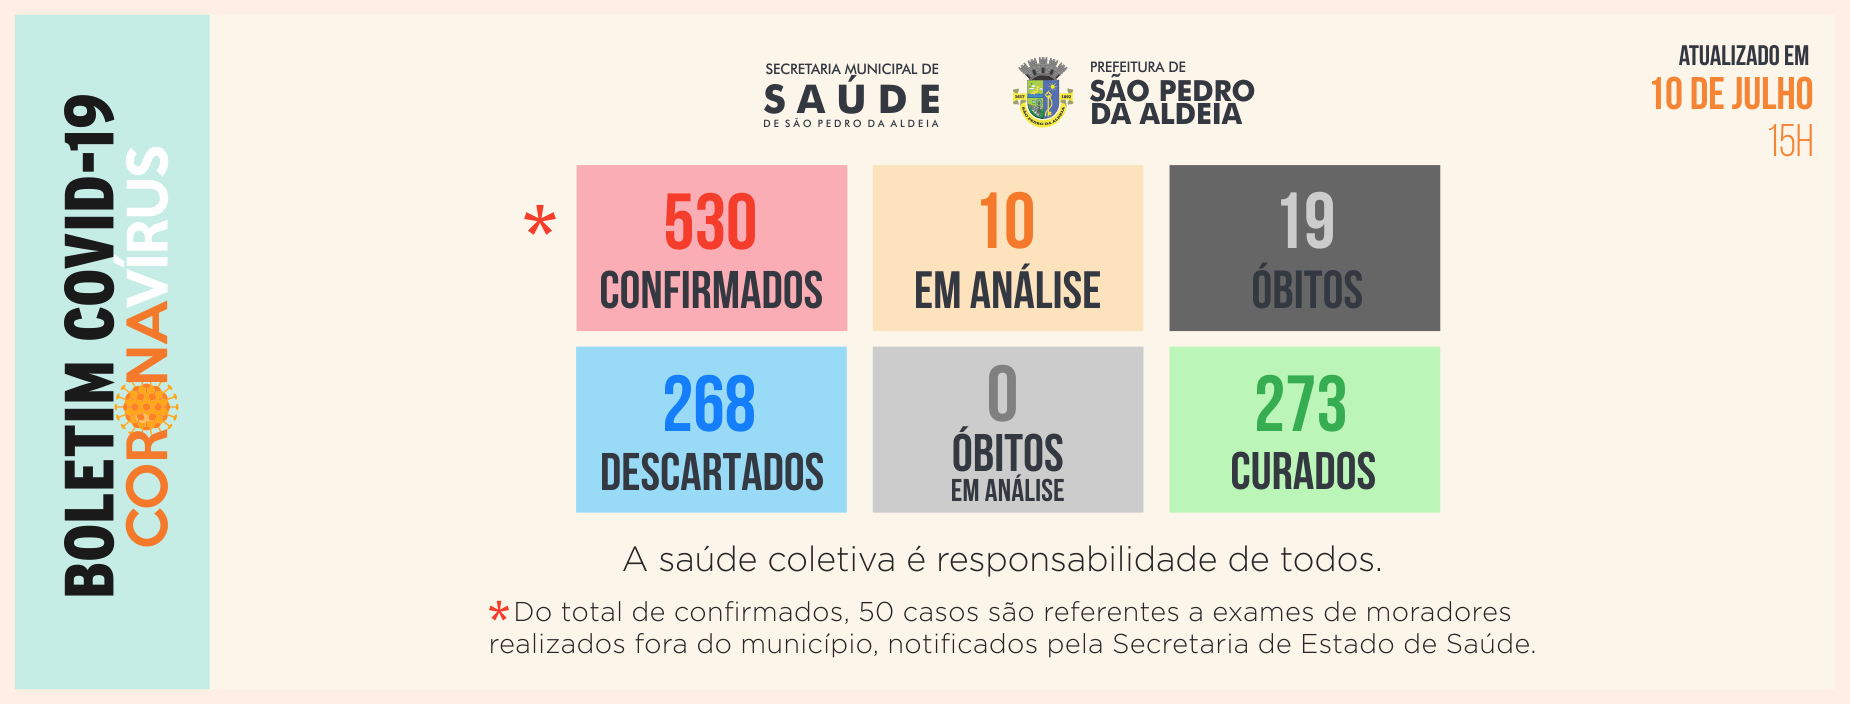 Números atualizados de casos confirmados de Covid-19 em São Pedro da Aldeia